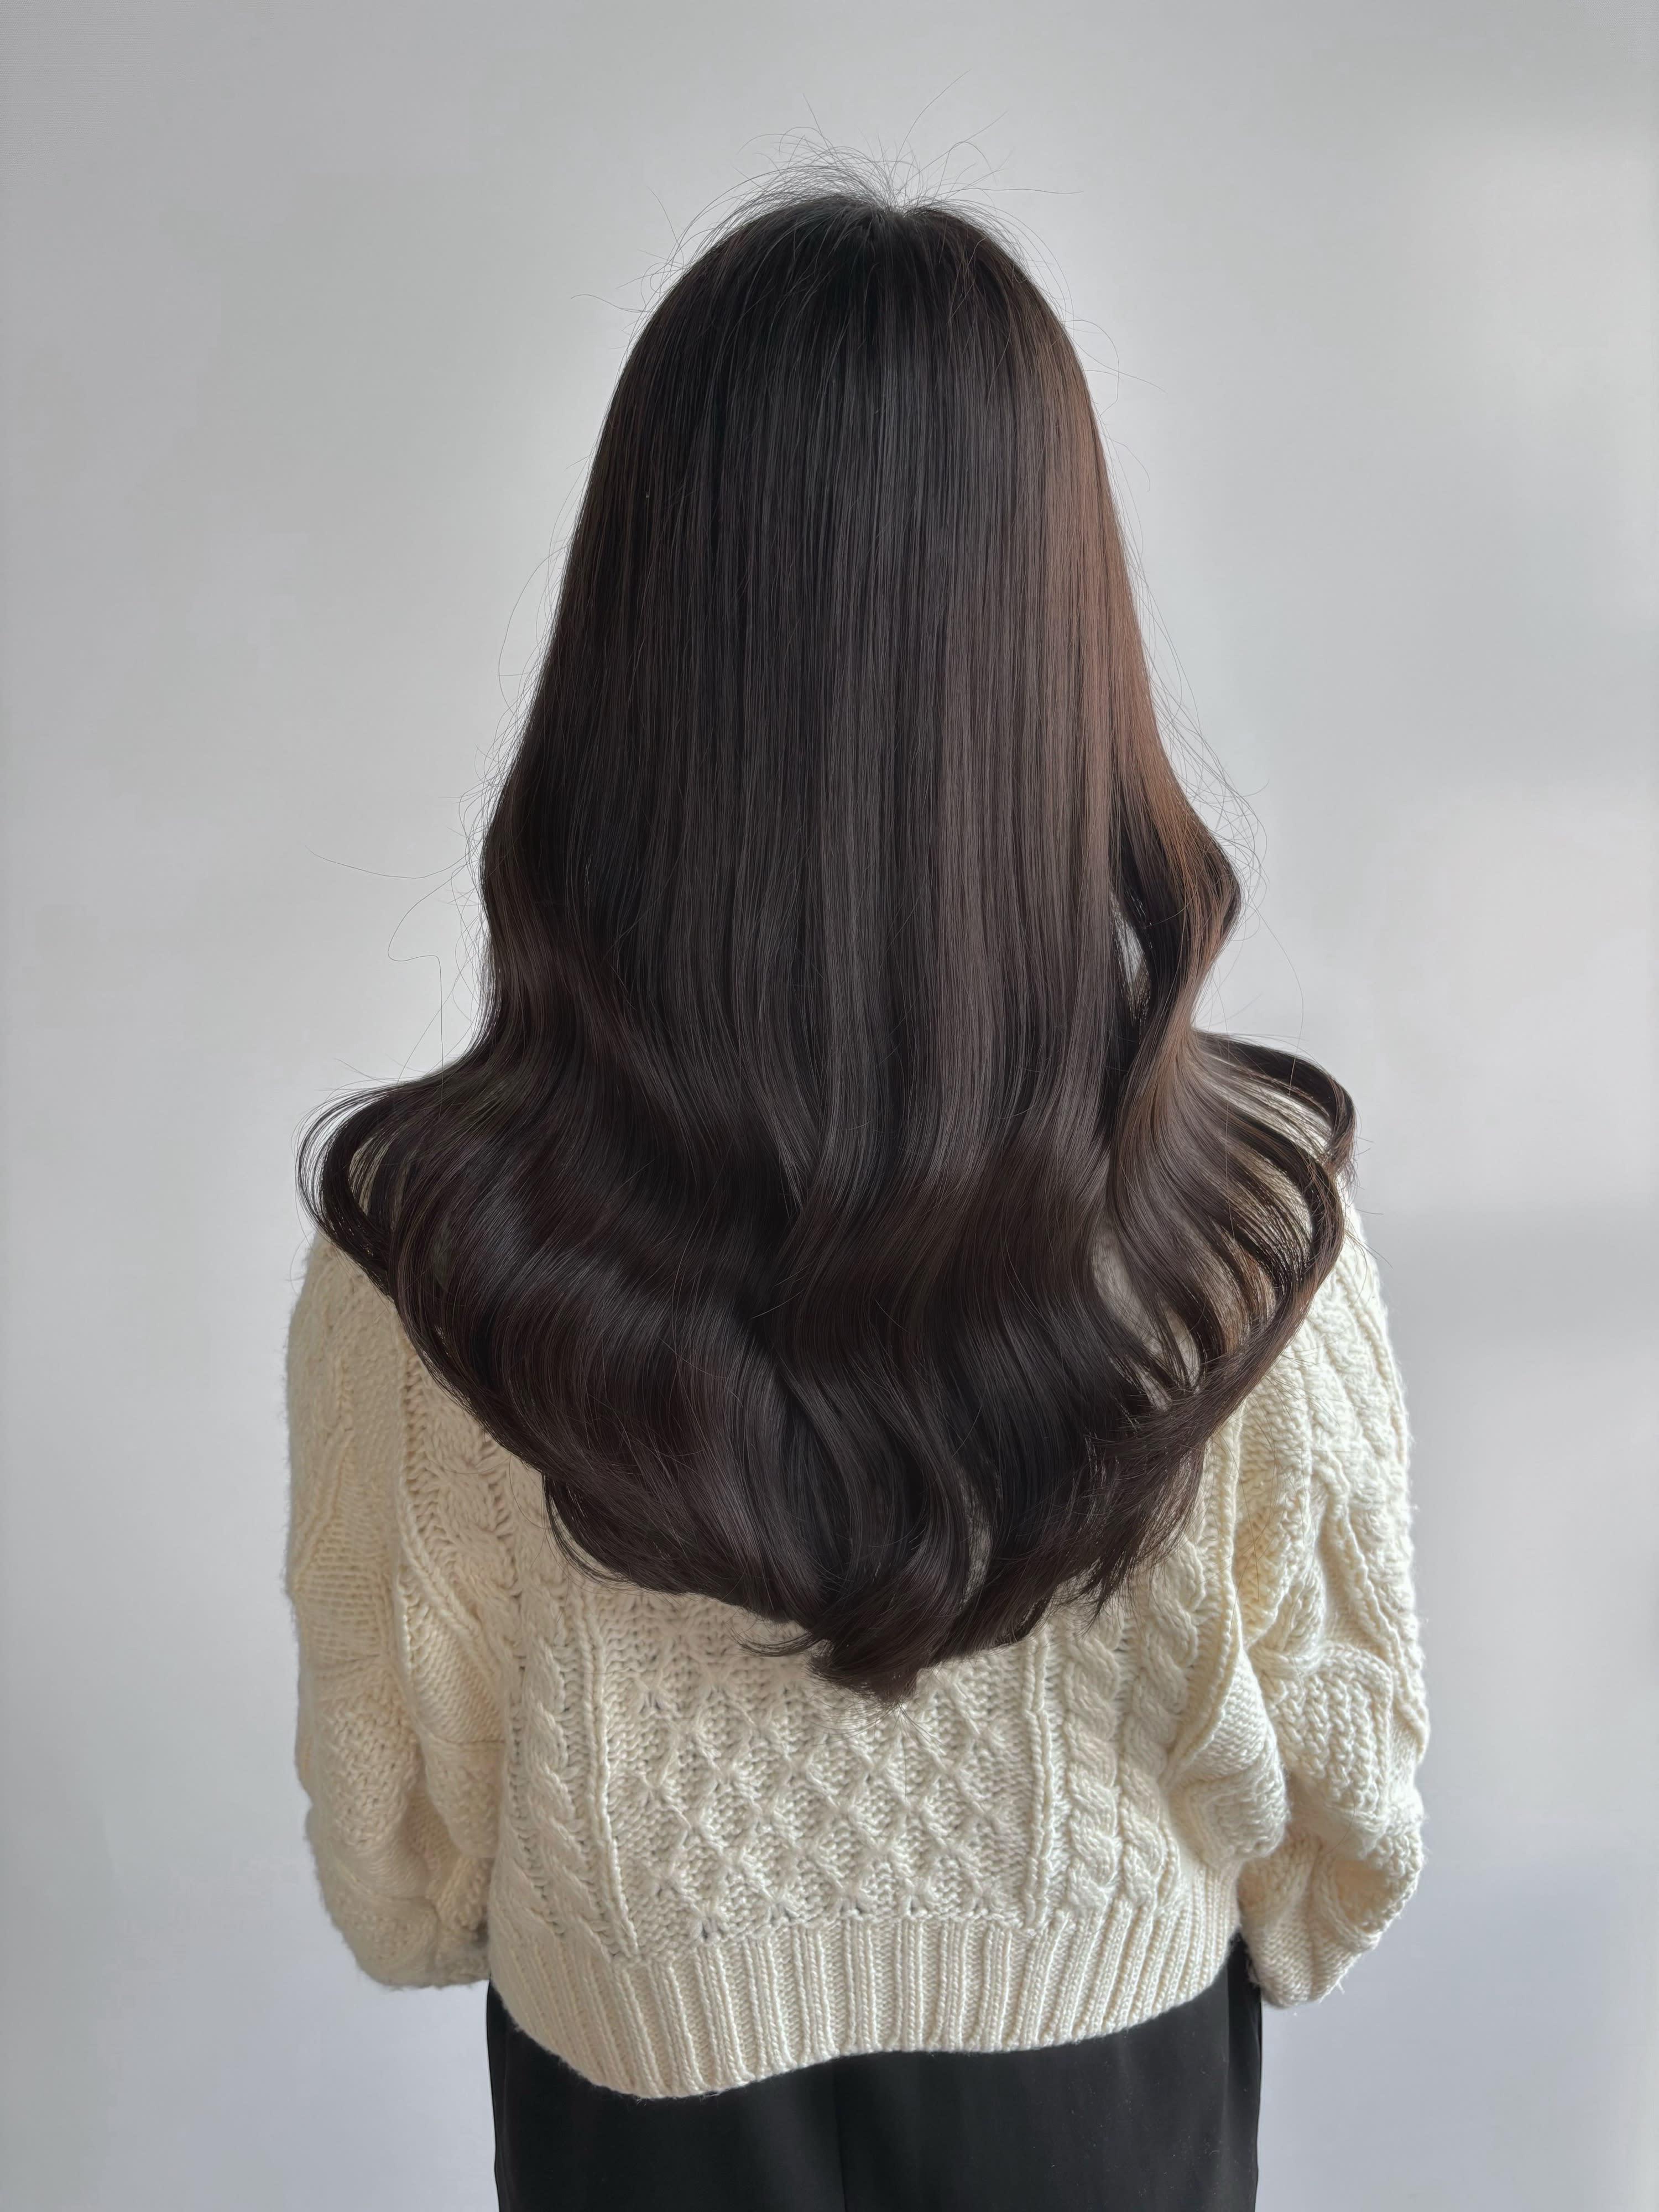 Hair Make Luxtz【ヘアーメイクラグズ】のスタイル紹介。レイヤースタイル/韓国巻き